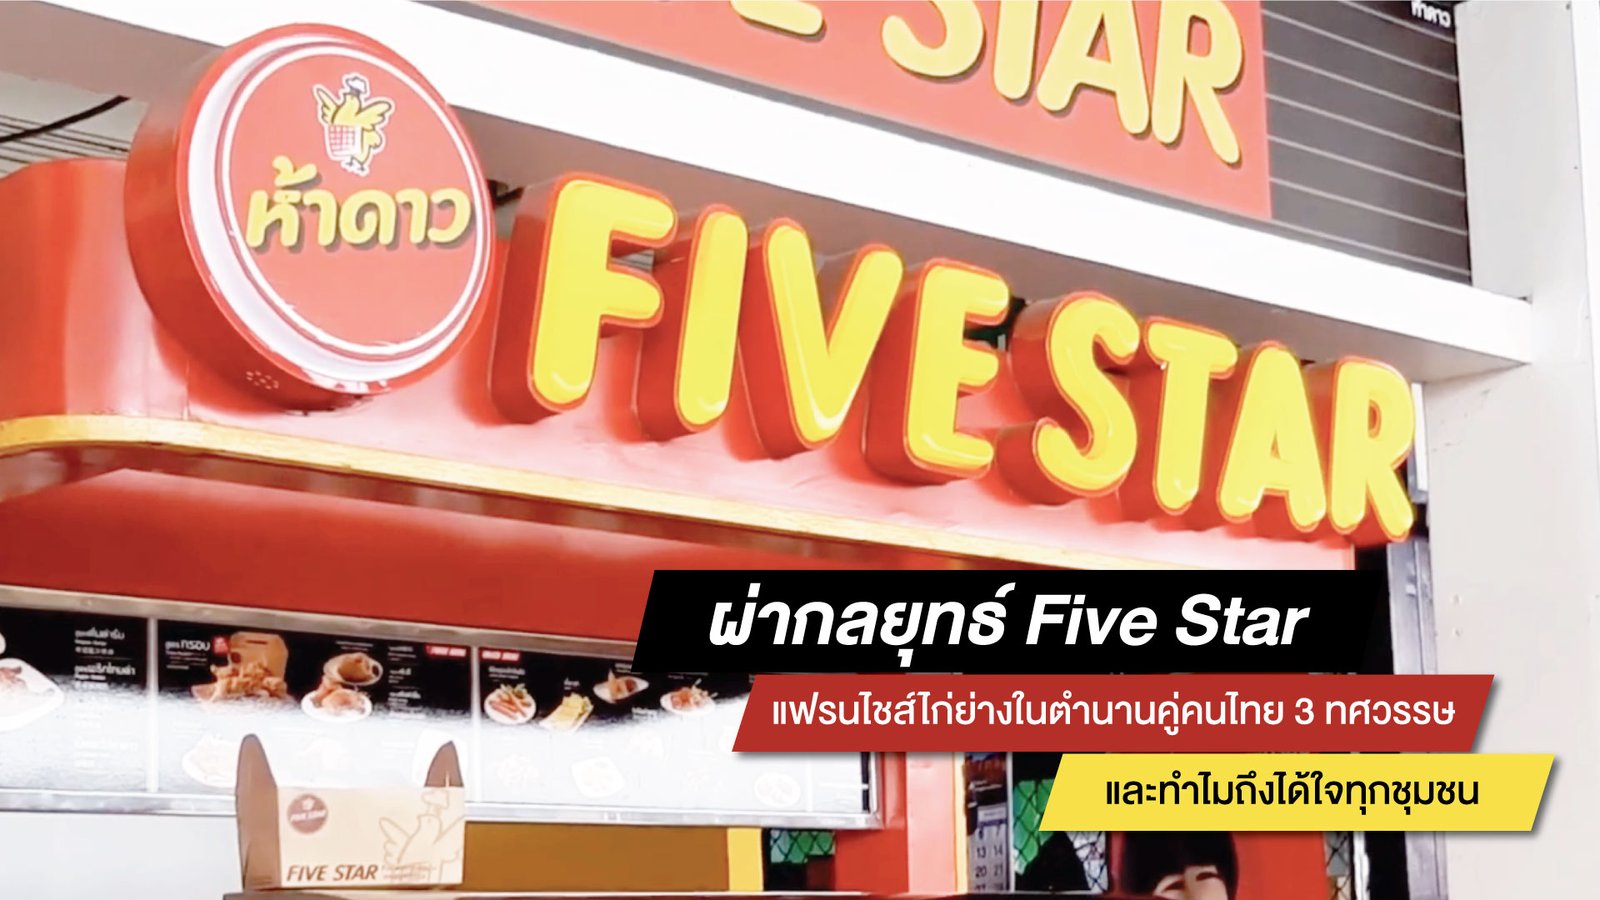 ผ่ากลยุทธ์ Five Star แฟรนไชส์ไก่ย่างในตำนานคู่คนไทย 3 ทศวรรษ และทำไมถึงได้ใจทุกชุมชน